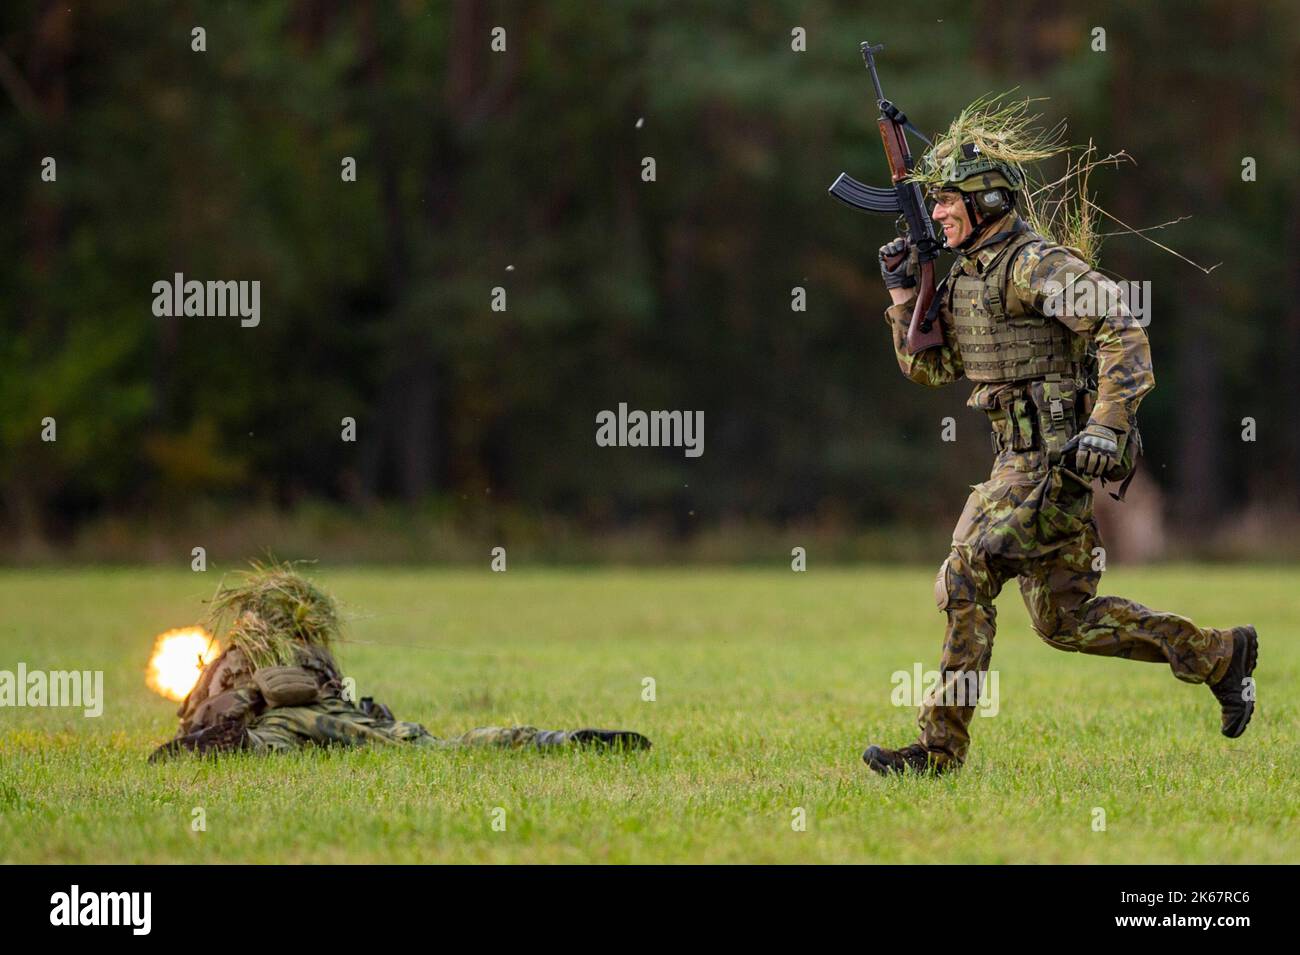 Regimiento de ingeniero militar fotografías e imágenes de alta resolución -  Página 3 - Alamy